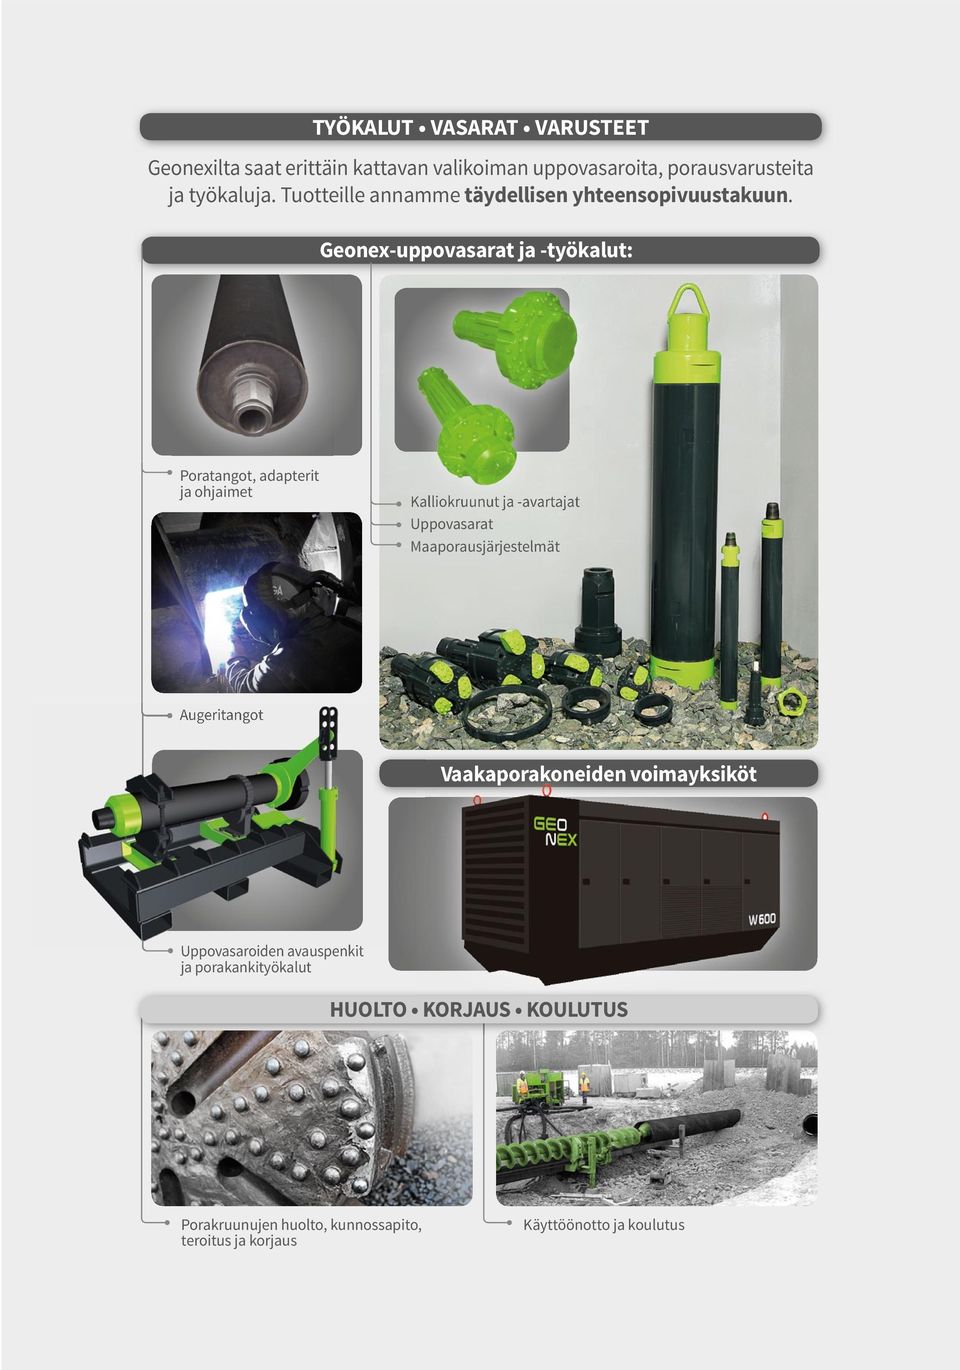 Geonex-uppovasarat ja -työkalut: Poratangot, adapterit ja ohjaimet Kalliokruunut ja -avartajat Uppovasarat